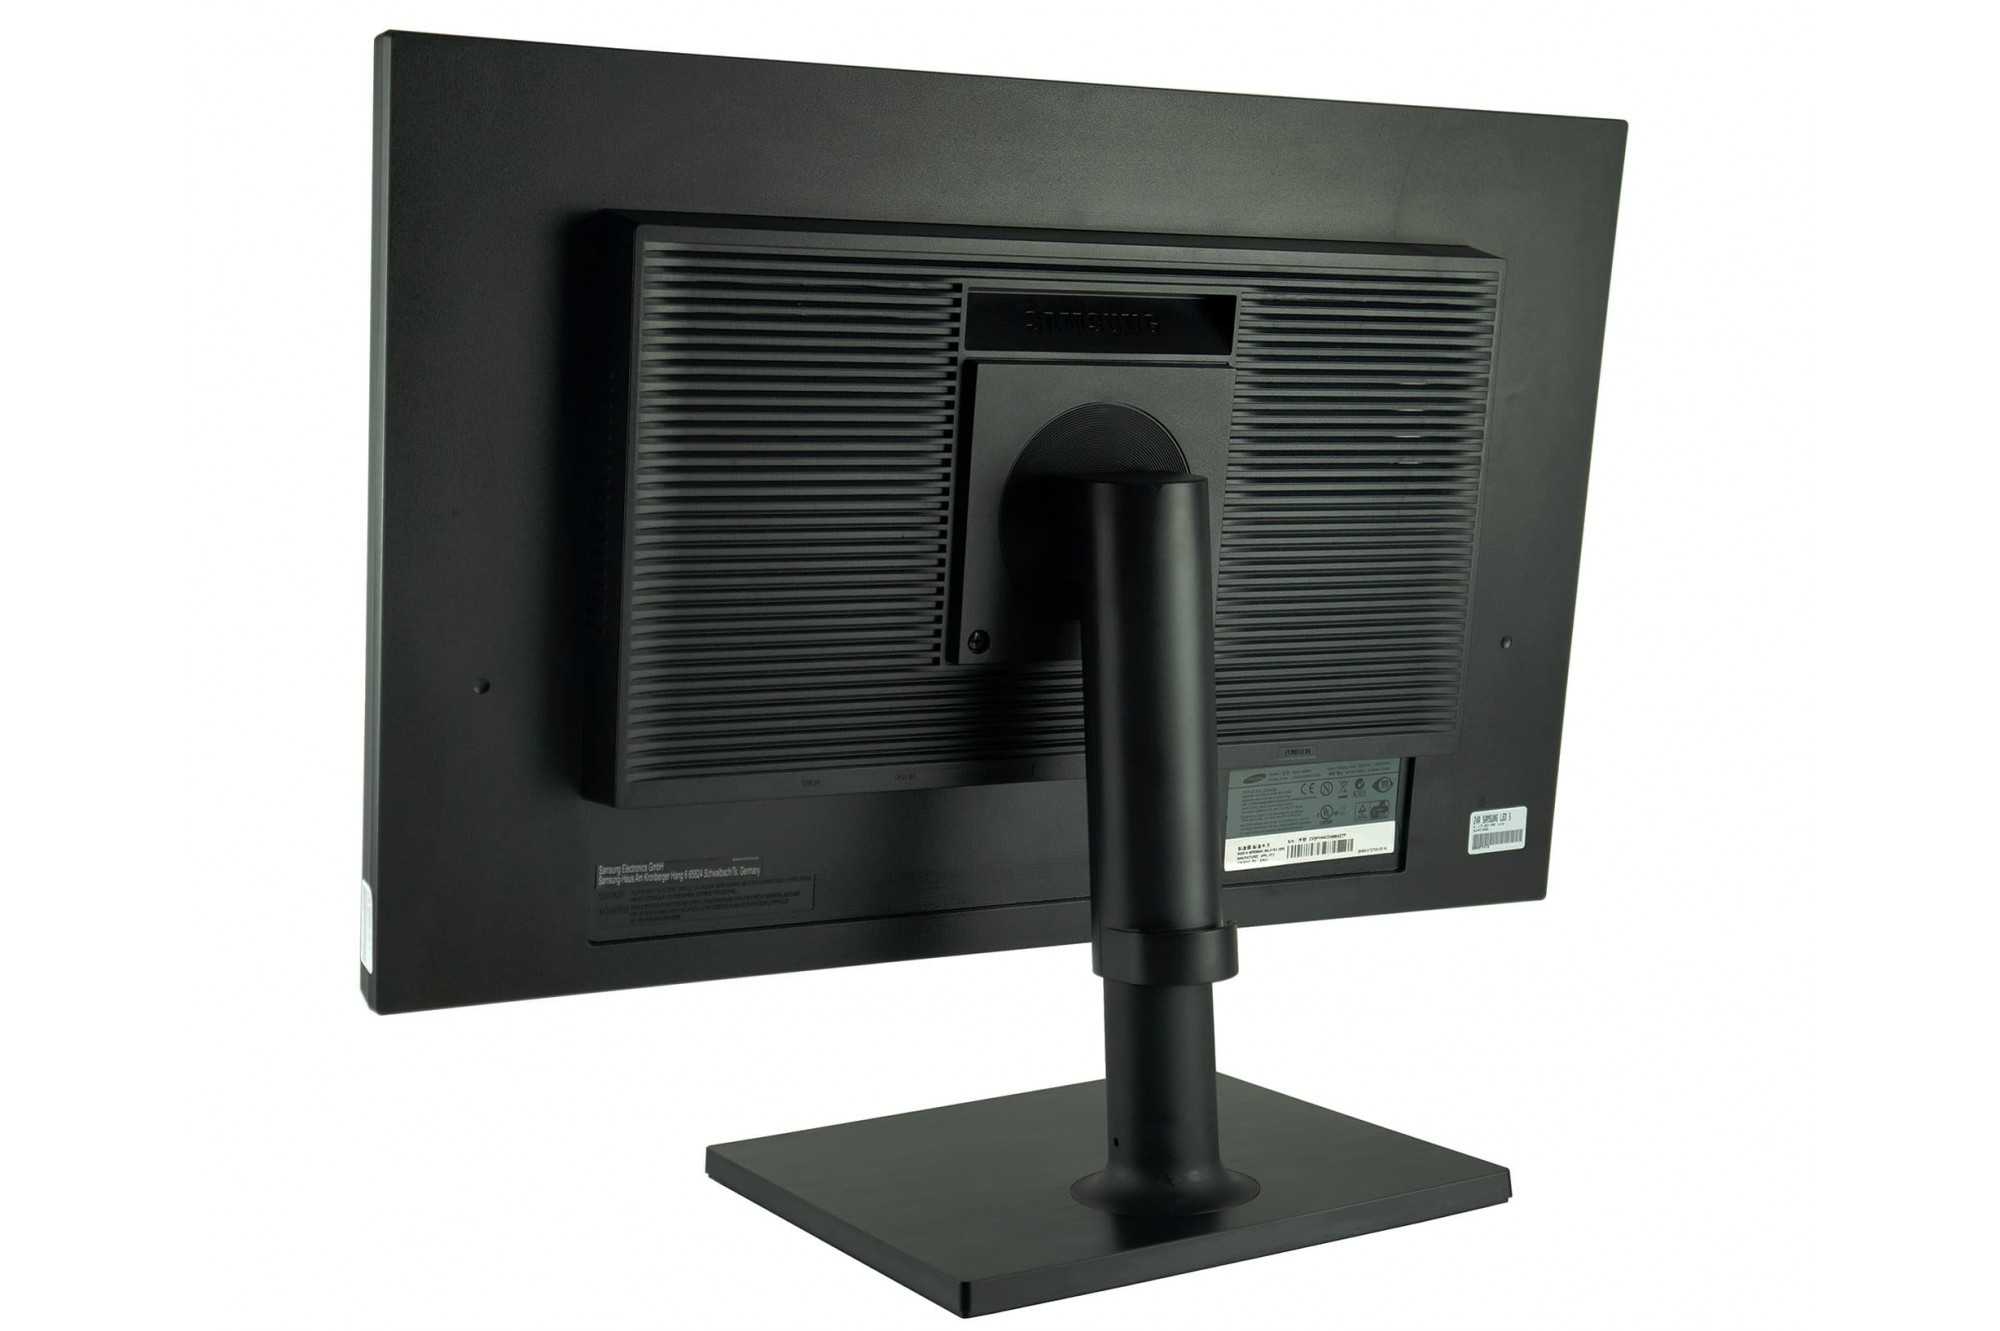 Жк монитор 24" samsung s24c450bw — купить, цена и характеристики, отзывы